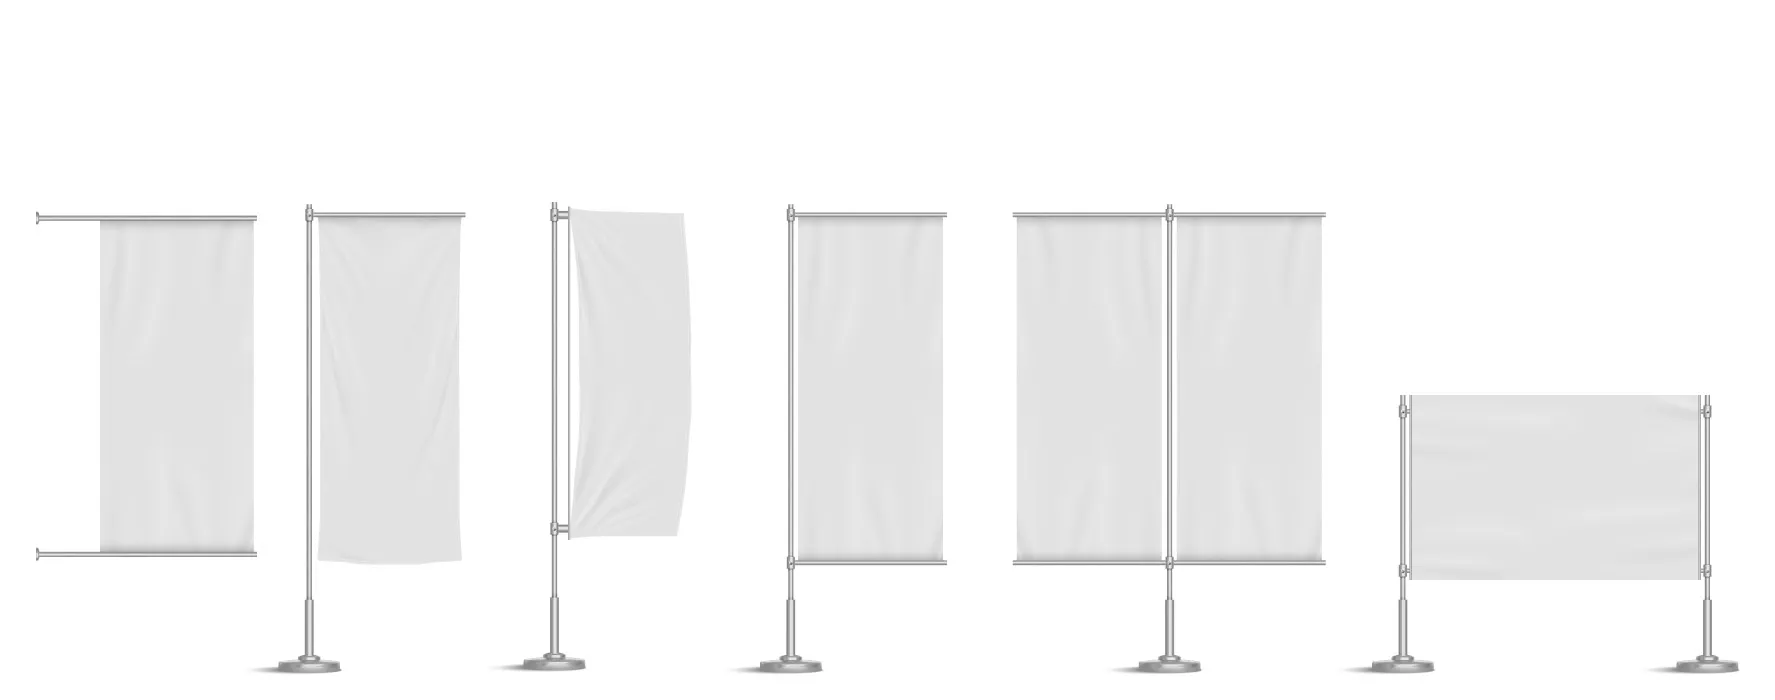 وکتور پرچم های سفید واقع بینانه با میله فلزی